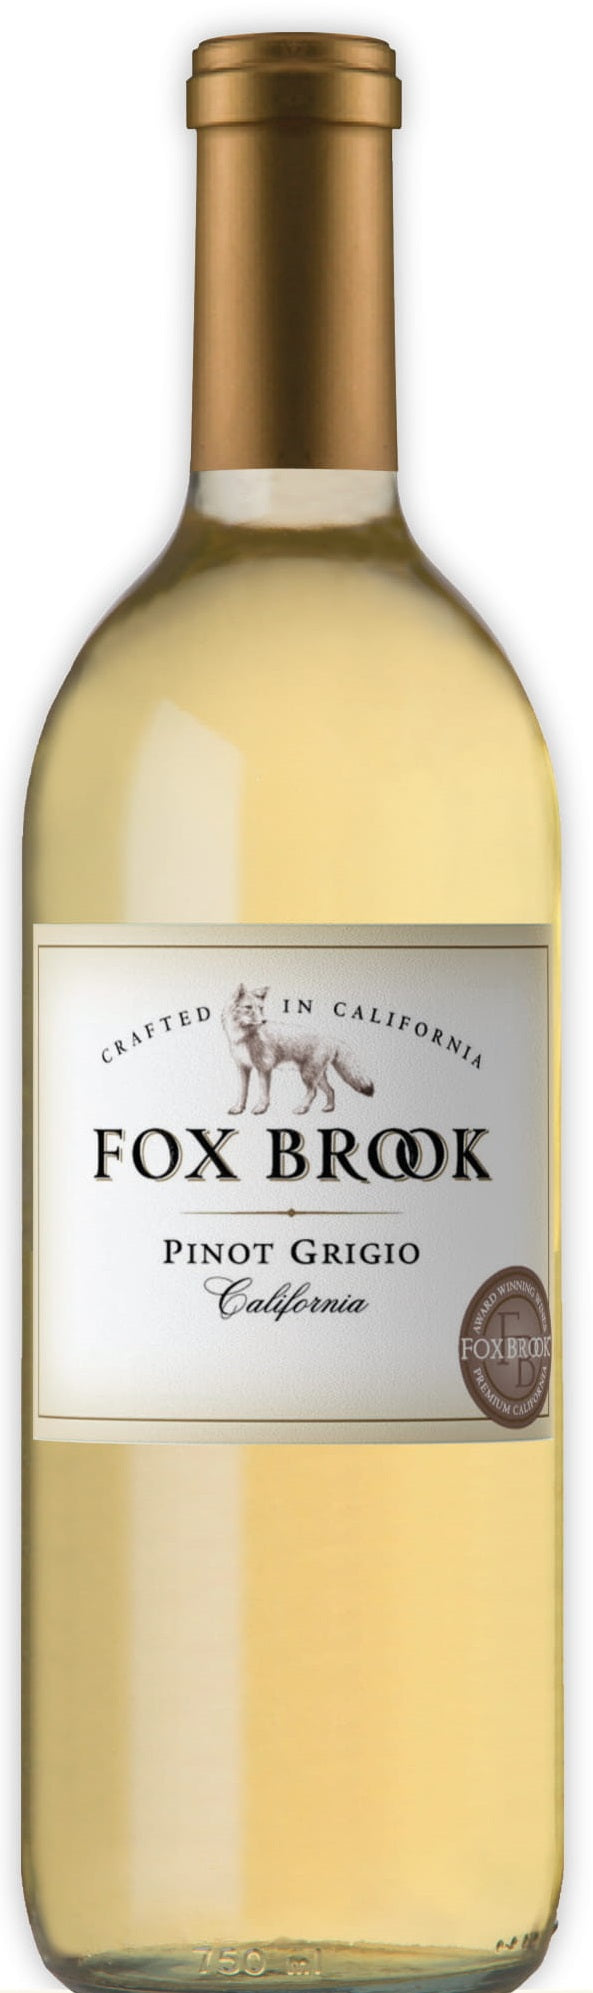 FOX BROOK PINOT GRIGIO